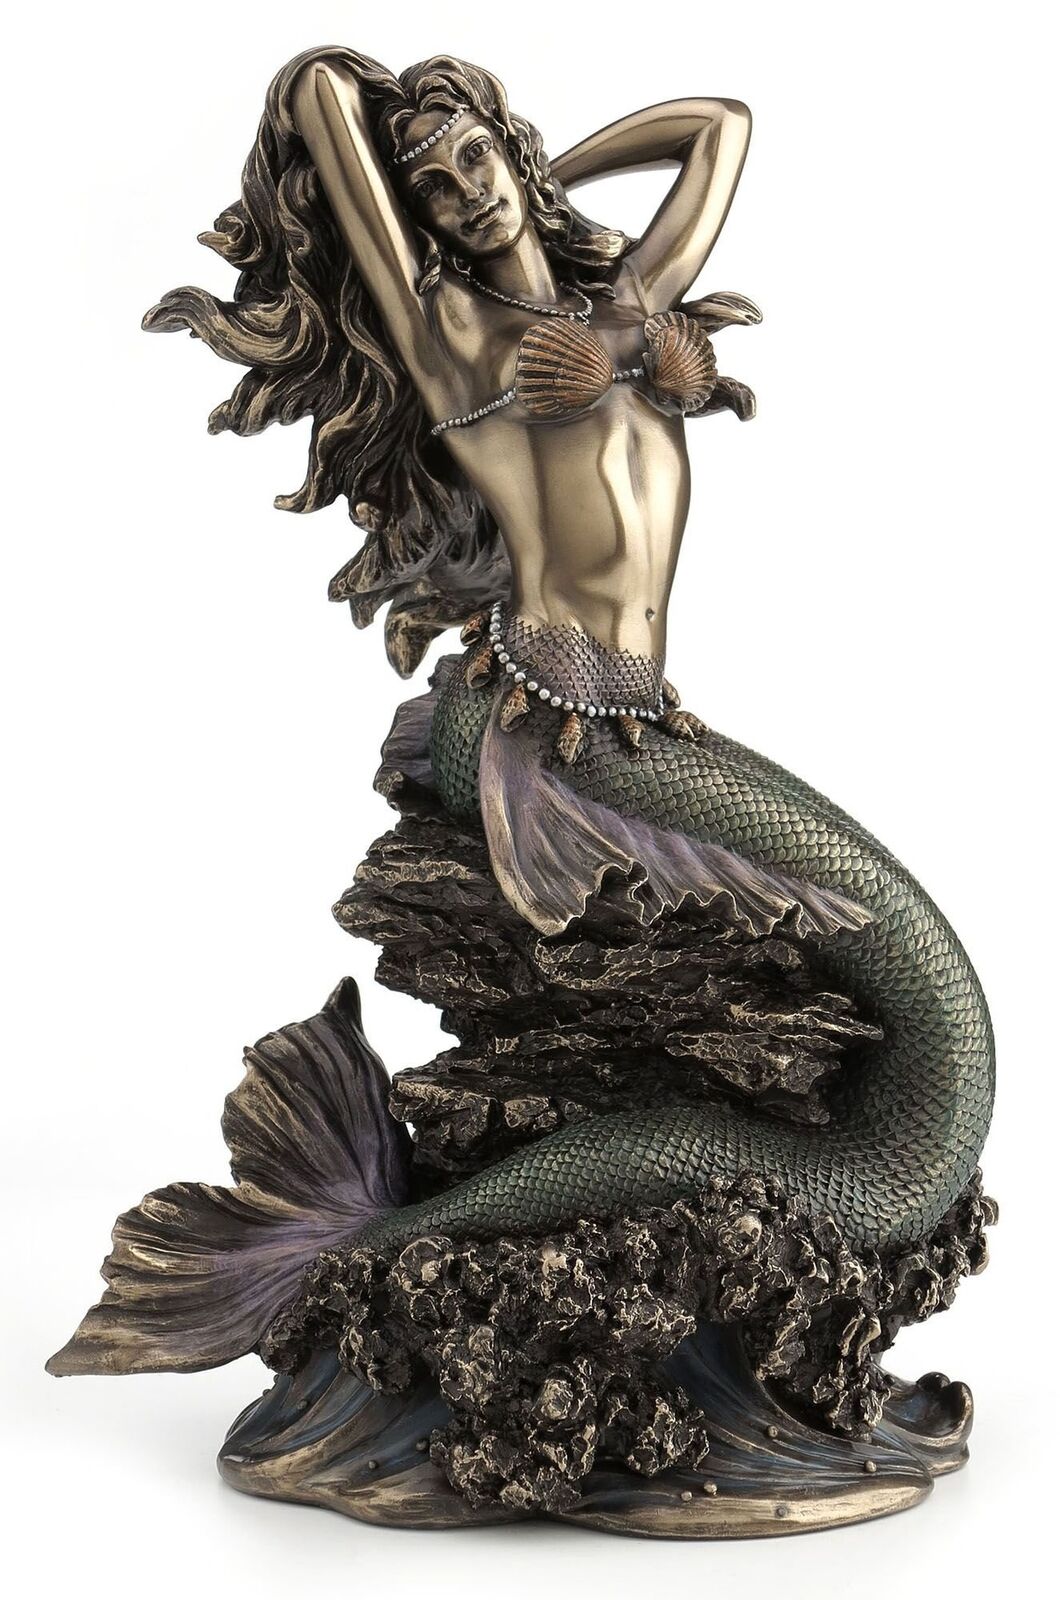 Large Beautiful Mermaid Sitting on Rock Statue Sculpture Figurine